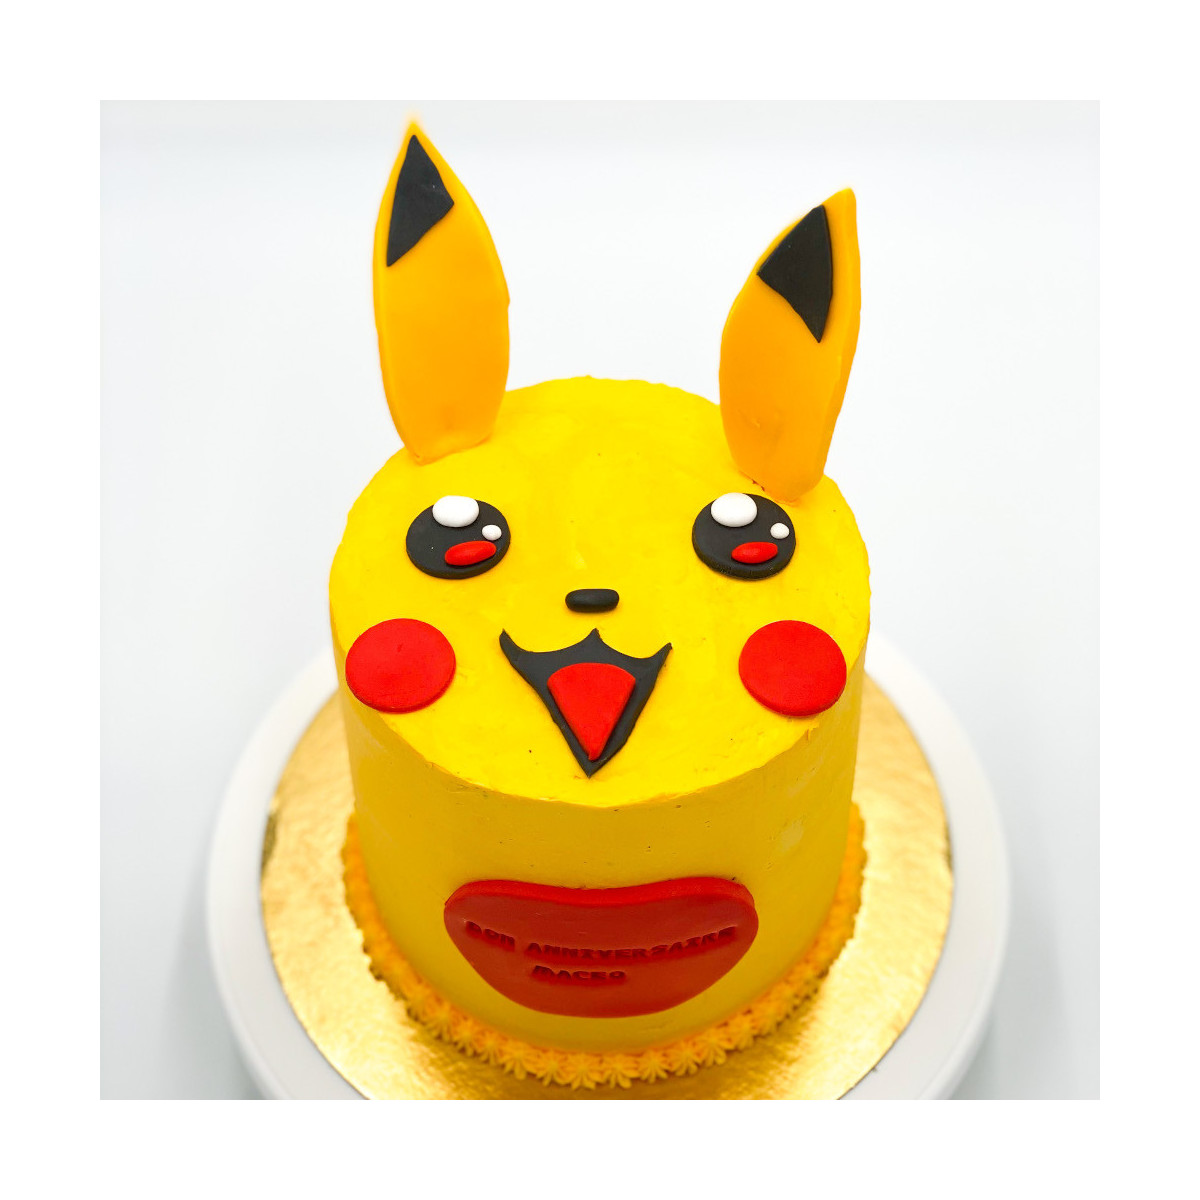 Organisez un anniversaire sur le thème des Pokémon - Citizenkid